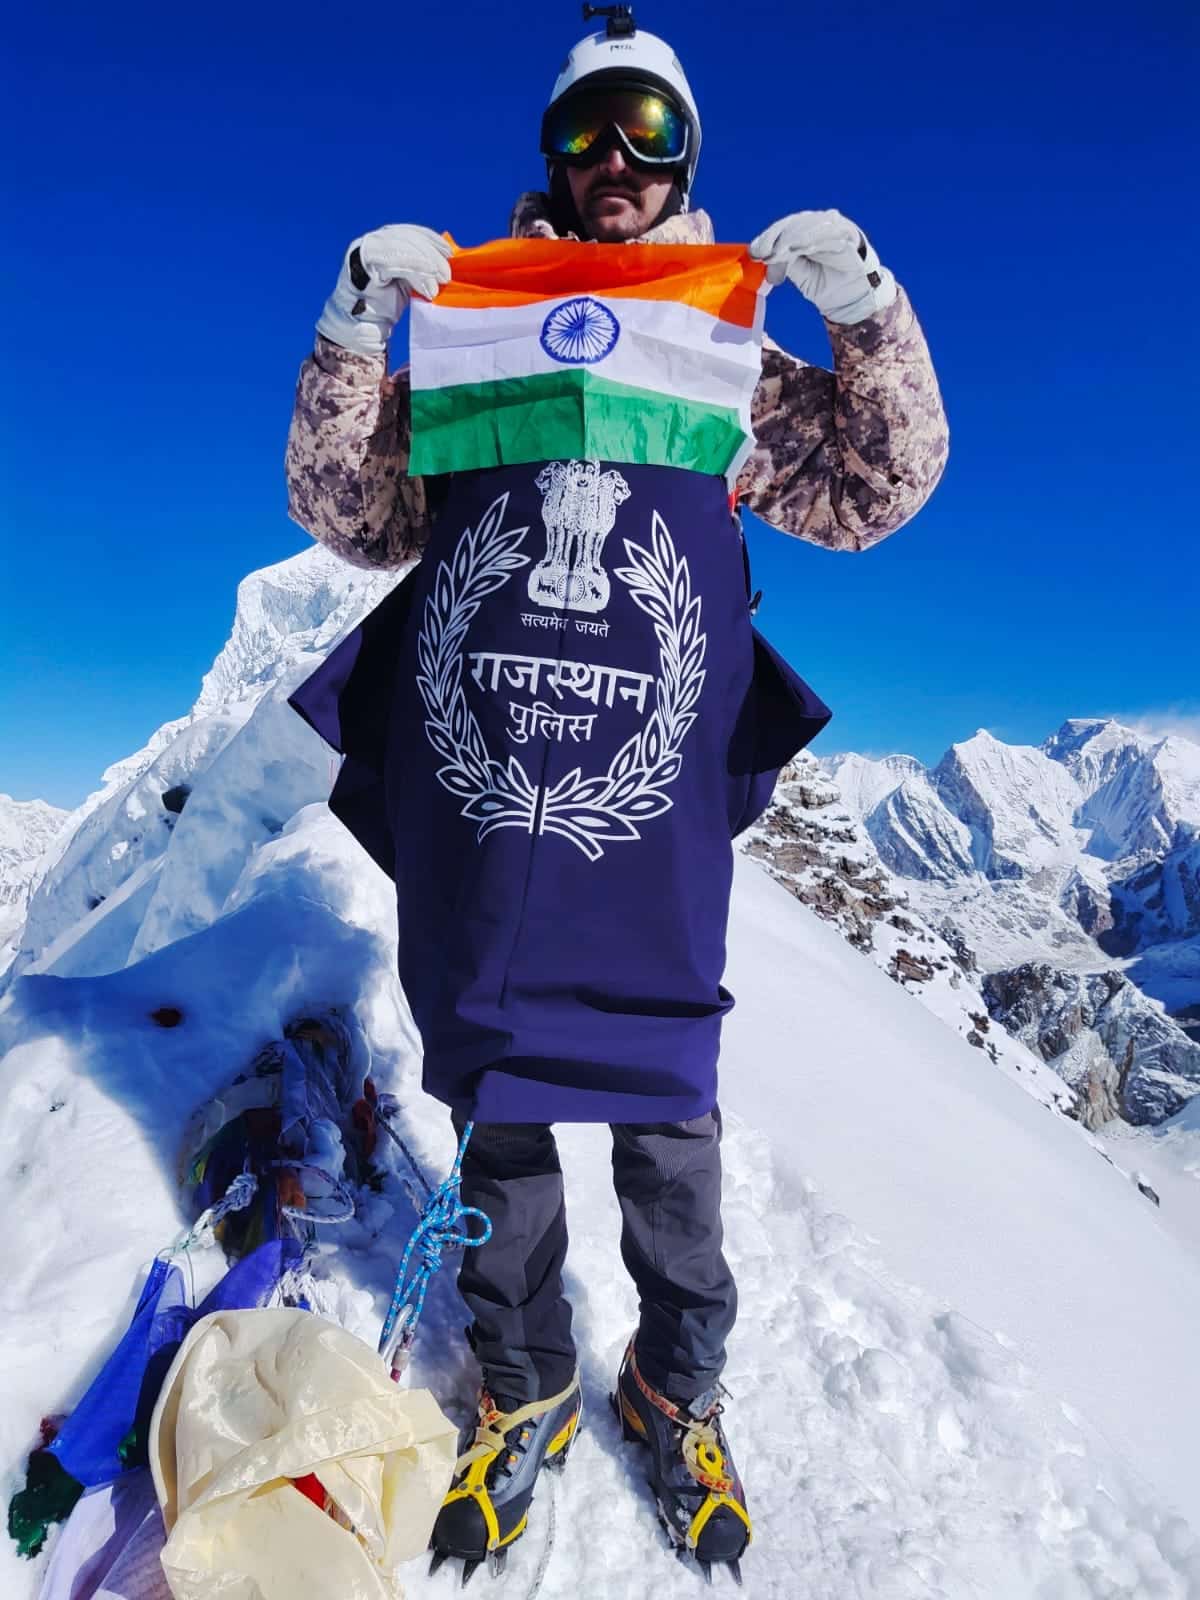 जोधपुर के सब इंस्पेक्टर भंवर सिंह ने माउंट लोबुचे पिक में 6119 मीटर पर सफल चढ़ाई कर फहराया तिरंगा